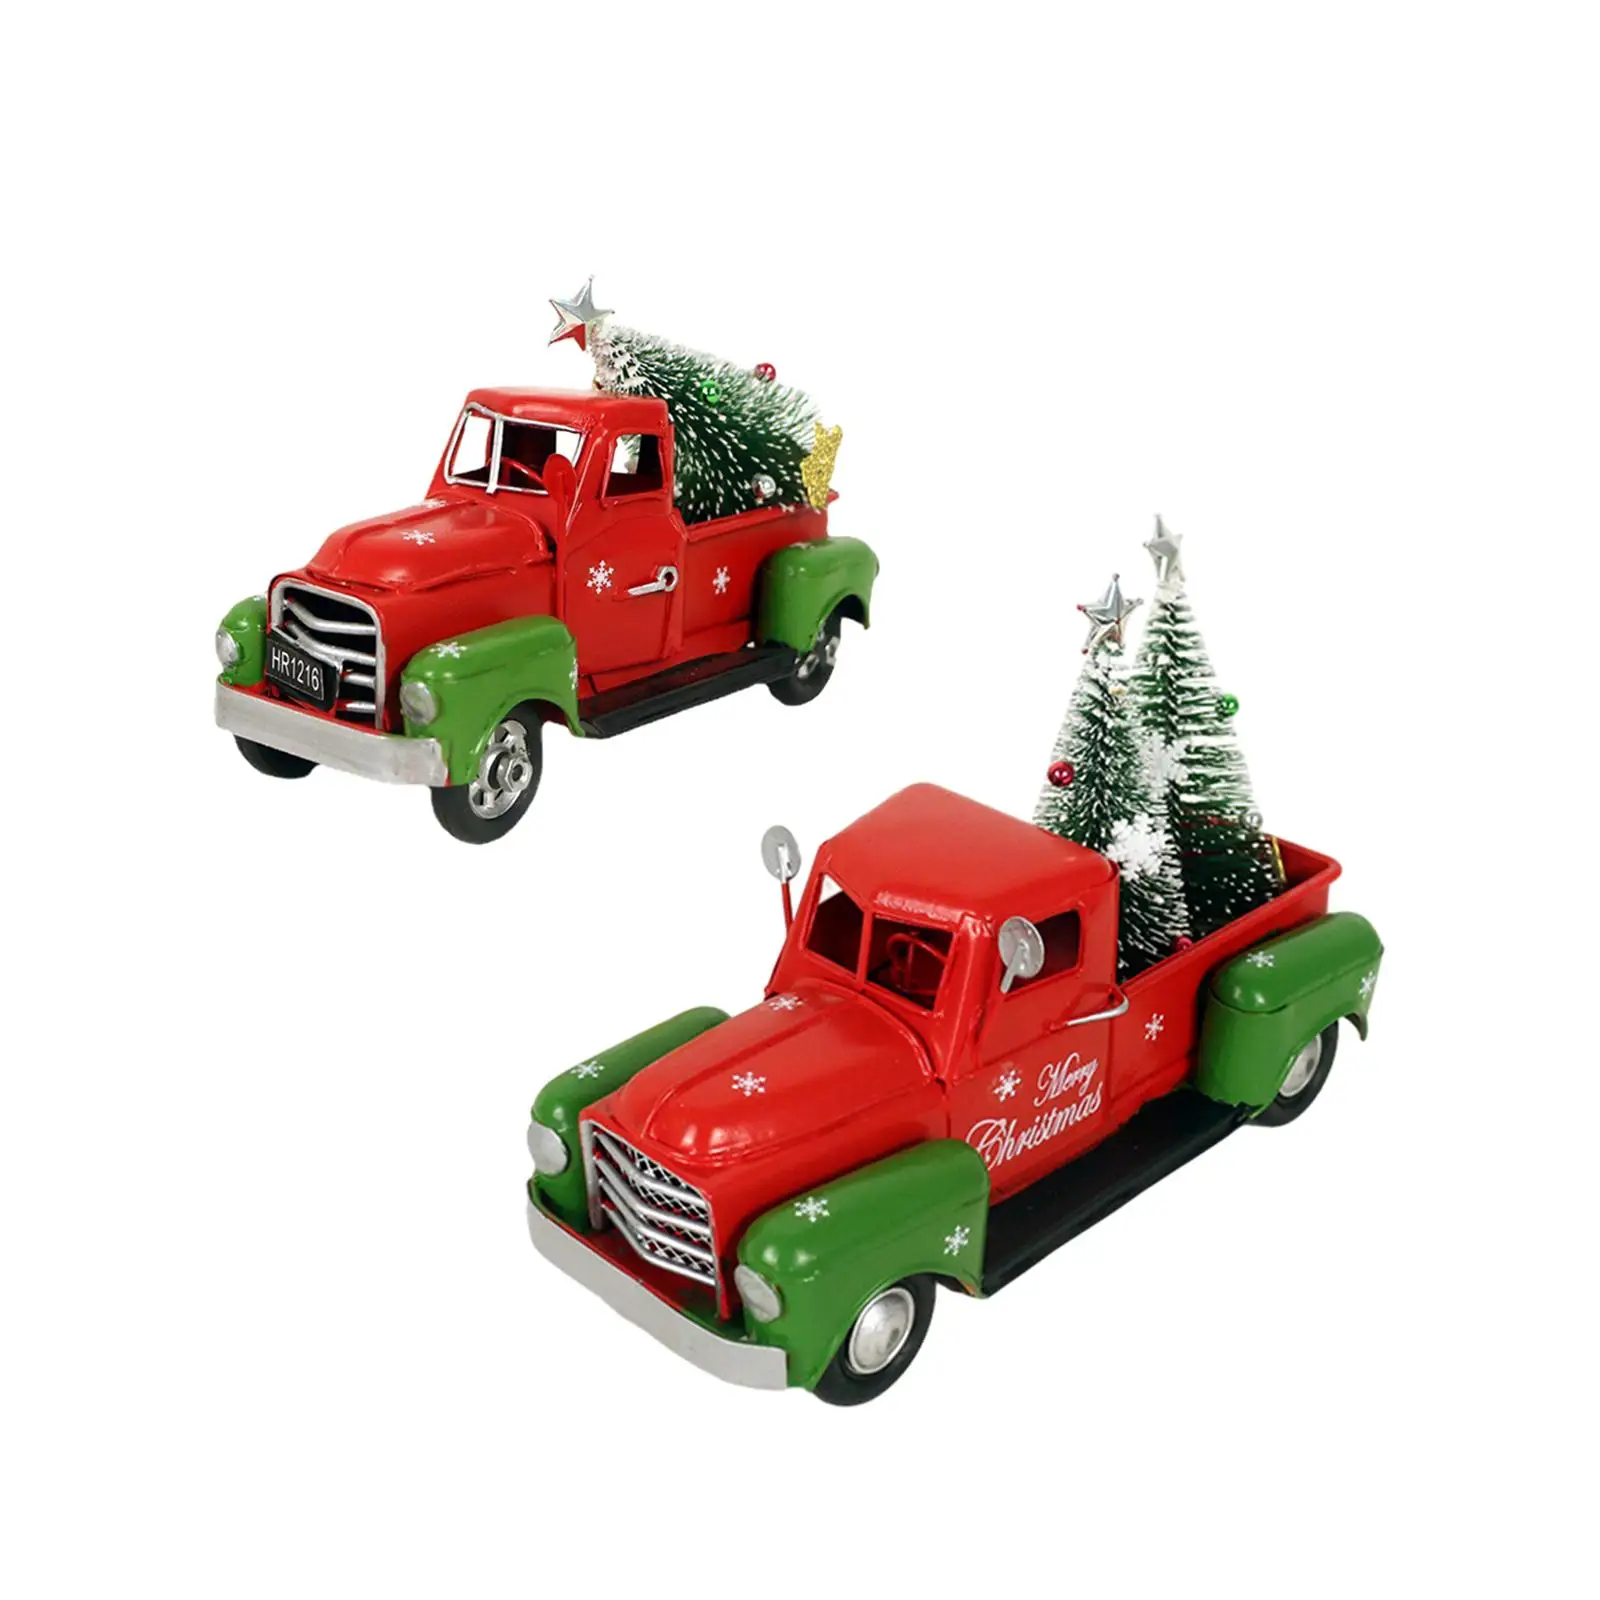 

Рождественская скульптура Красного грузовика в винтажном стиле с рождественской елкой фермерские рождественские украшения модель автомобиля для центрального стола